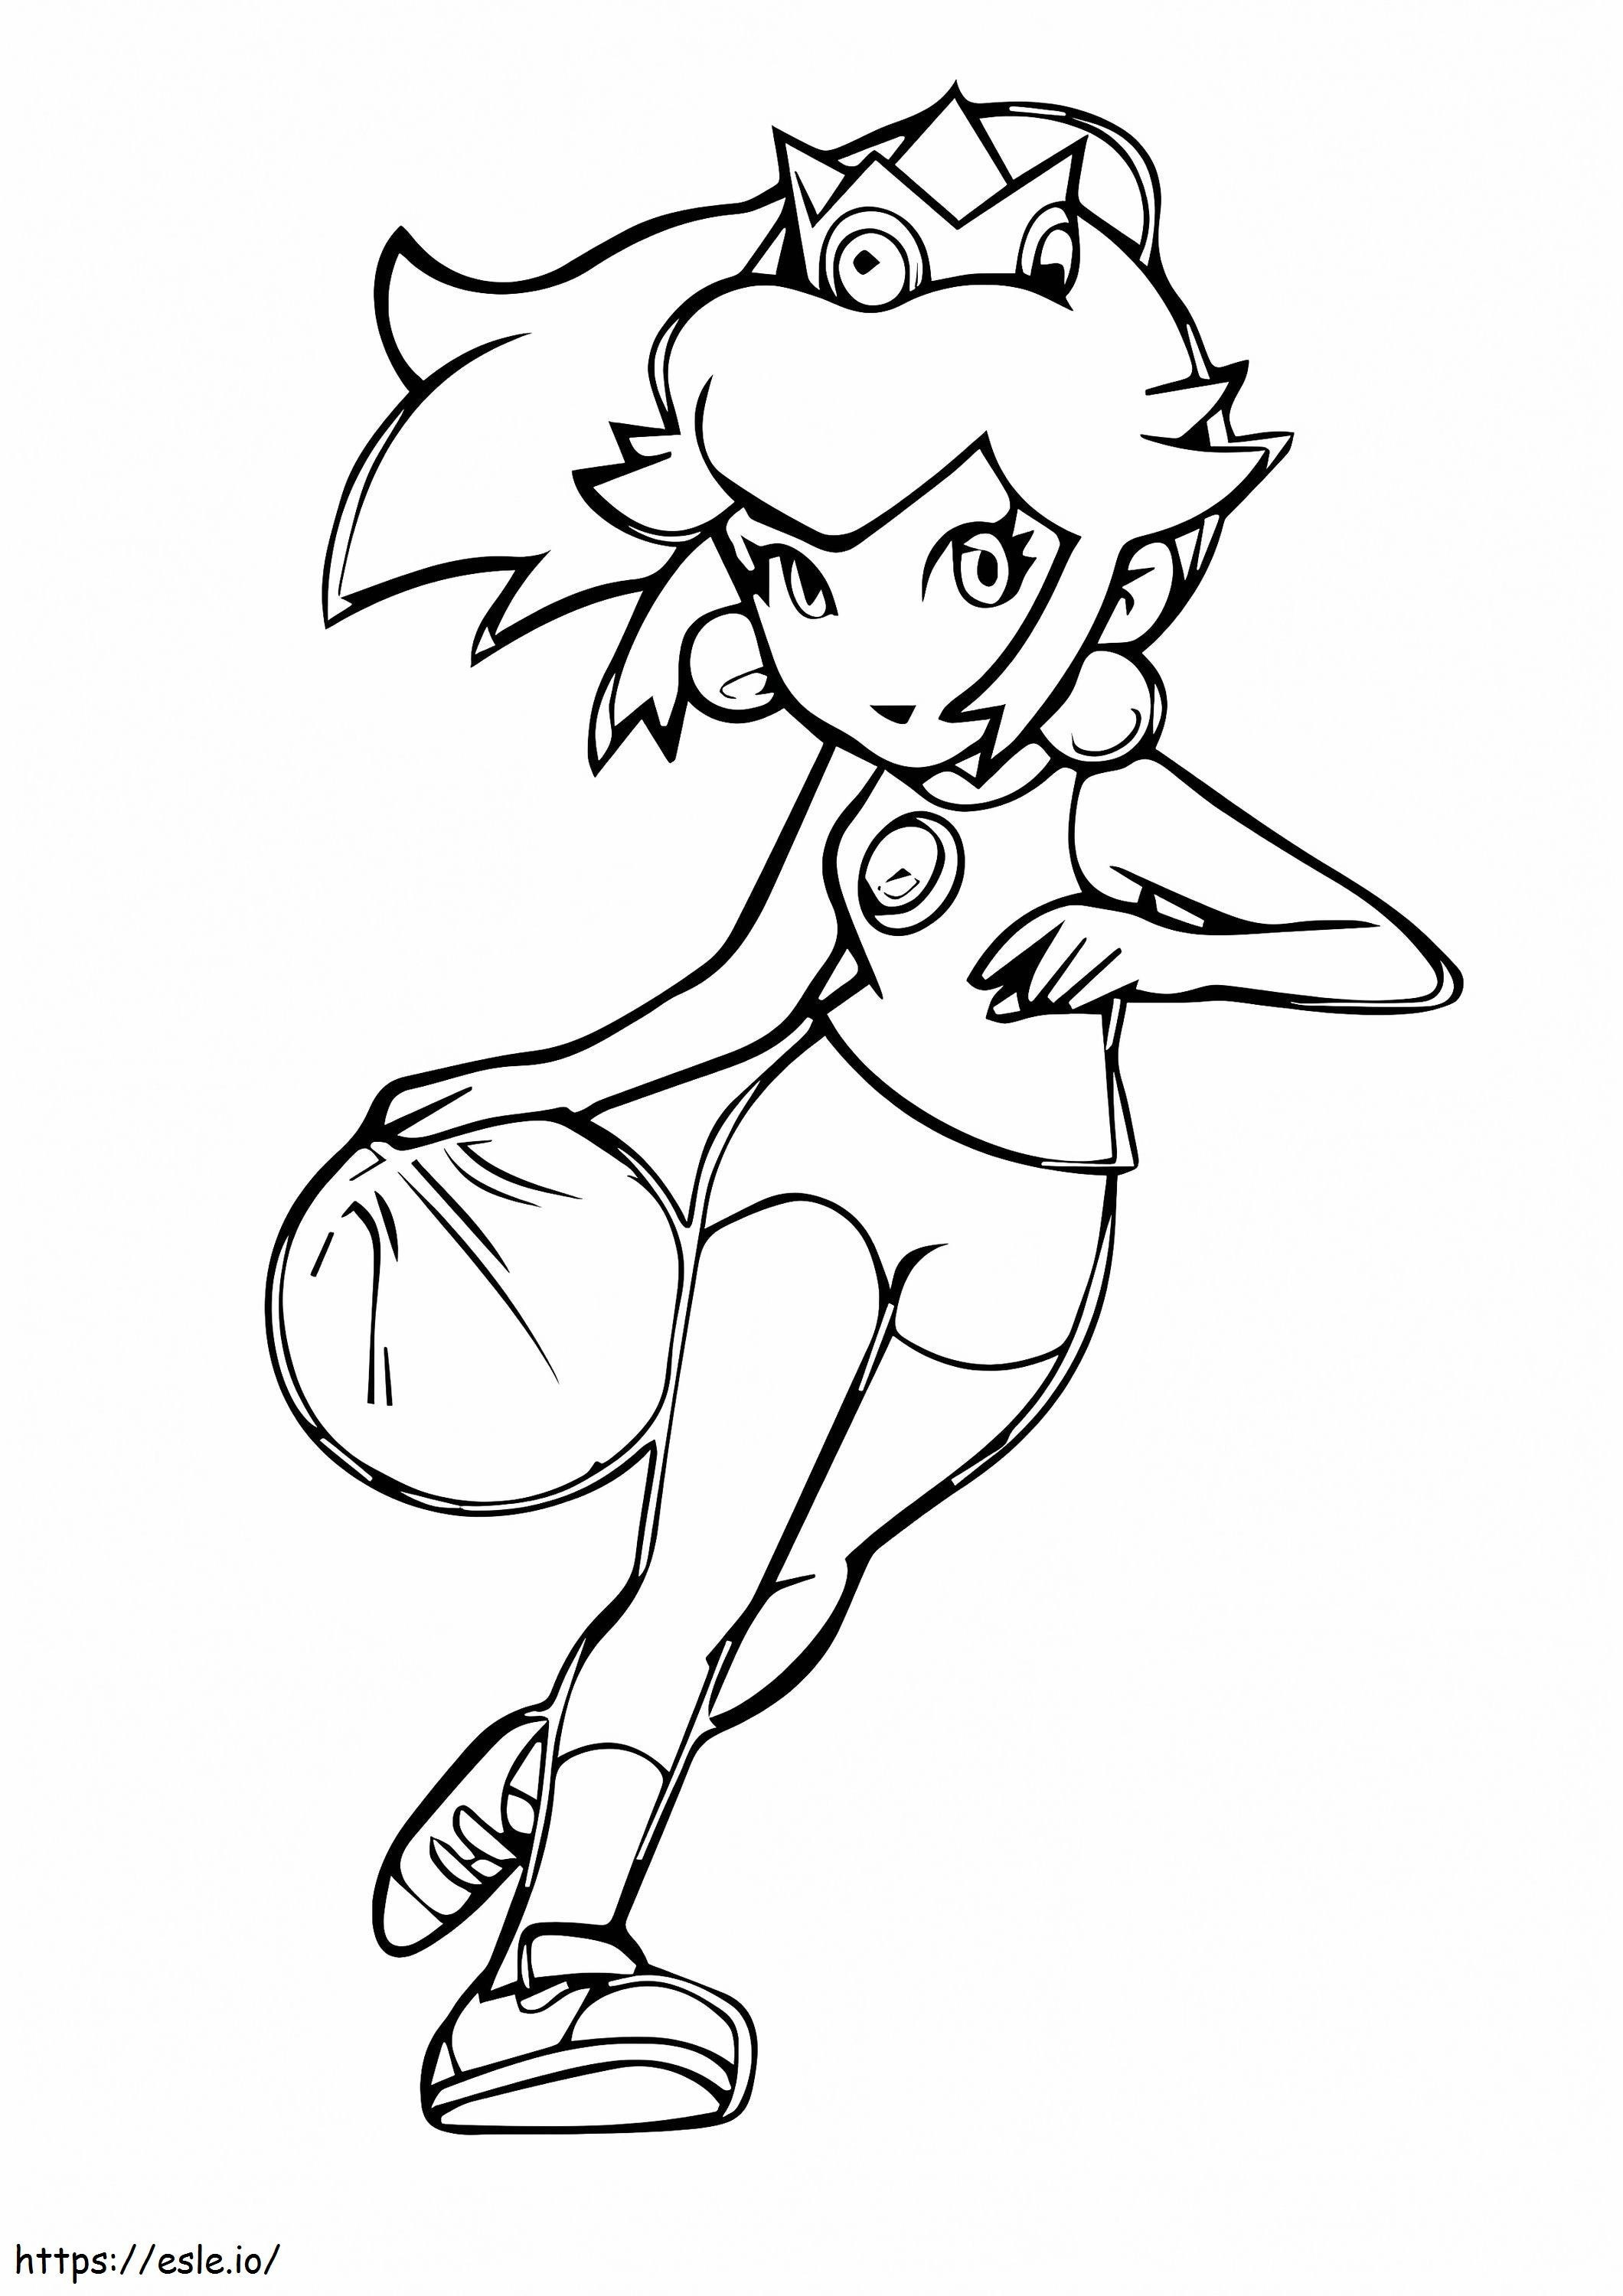  Princesa Peach Jogar Bola de Basquete A4 para colorir